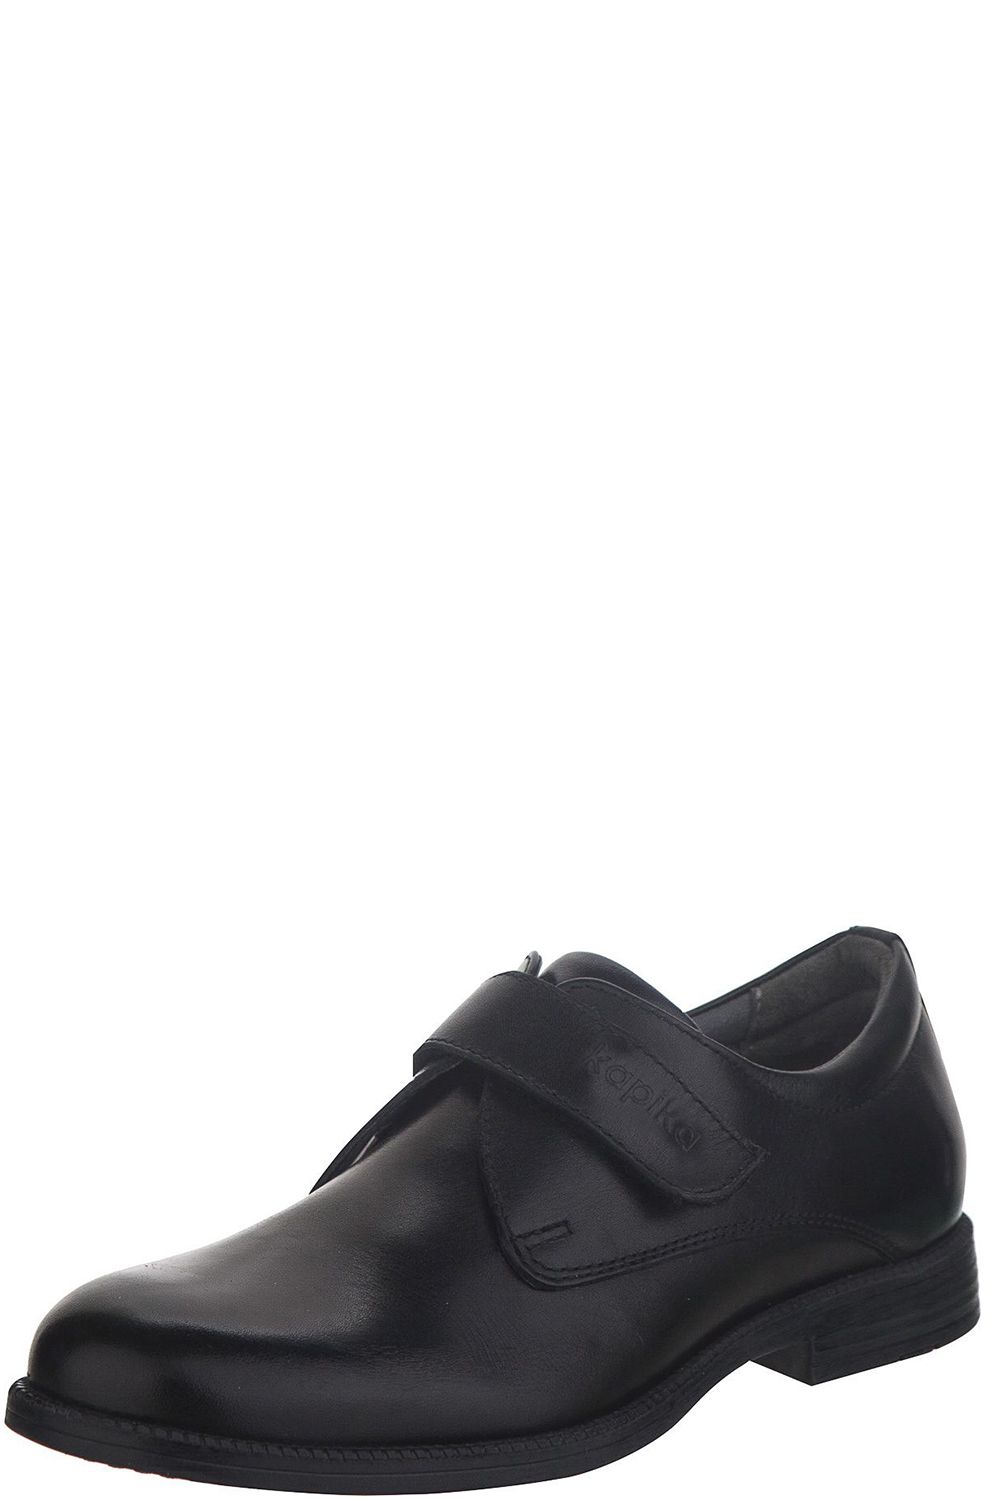 Туфли Kapika, размер 33, цвет черный 23467-1 - фото 1